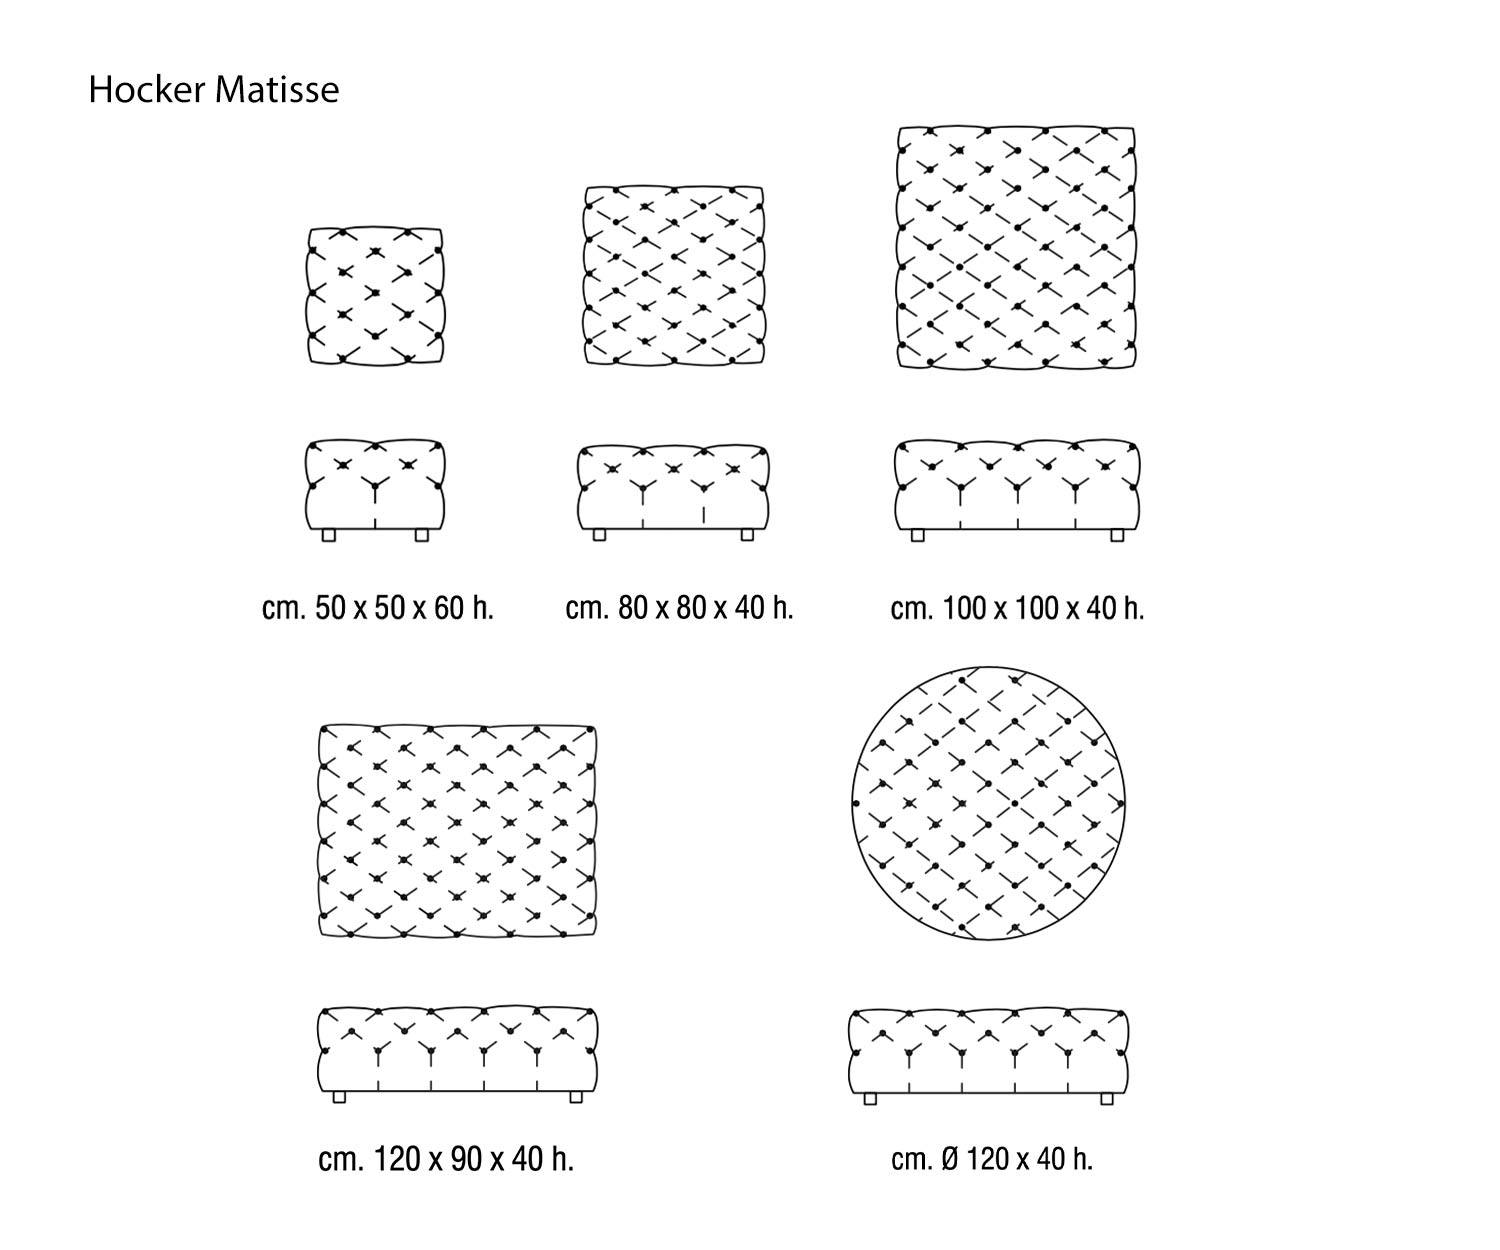 Marelli Sgabello Matisse Sketch Dimensioni Dimensioni